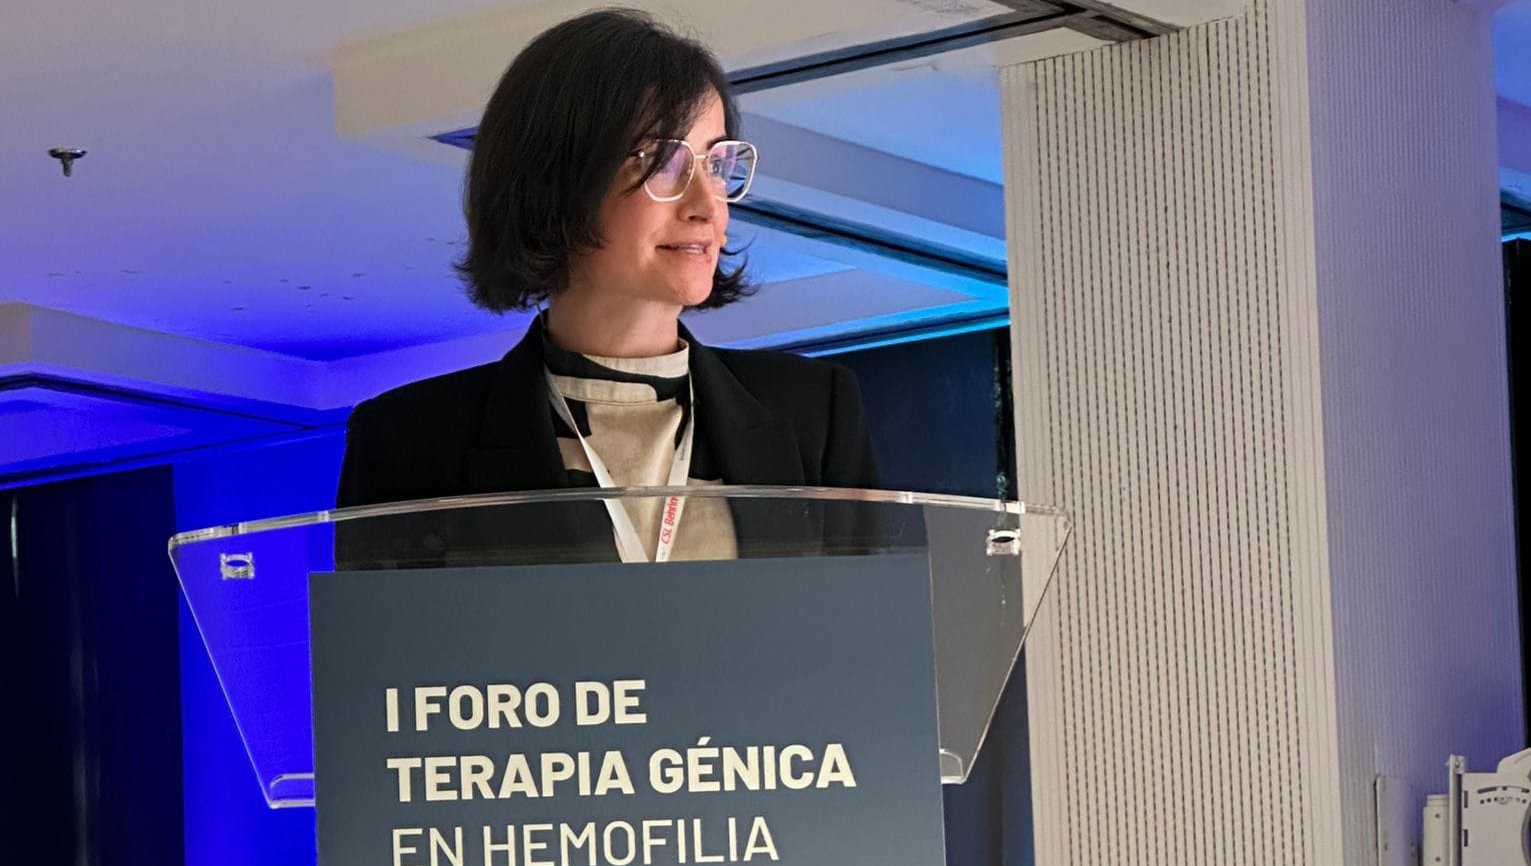 AELMHU representada por su directora ejecutiva, Marian Corral, ha participado en el I Foro de Terapia Génica organizado en Madrid por CSL Benring.